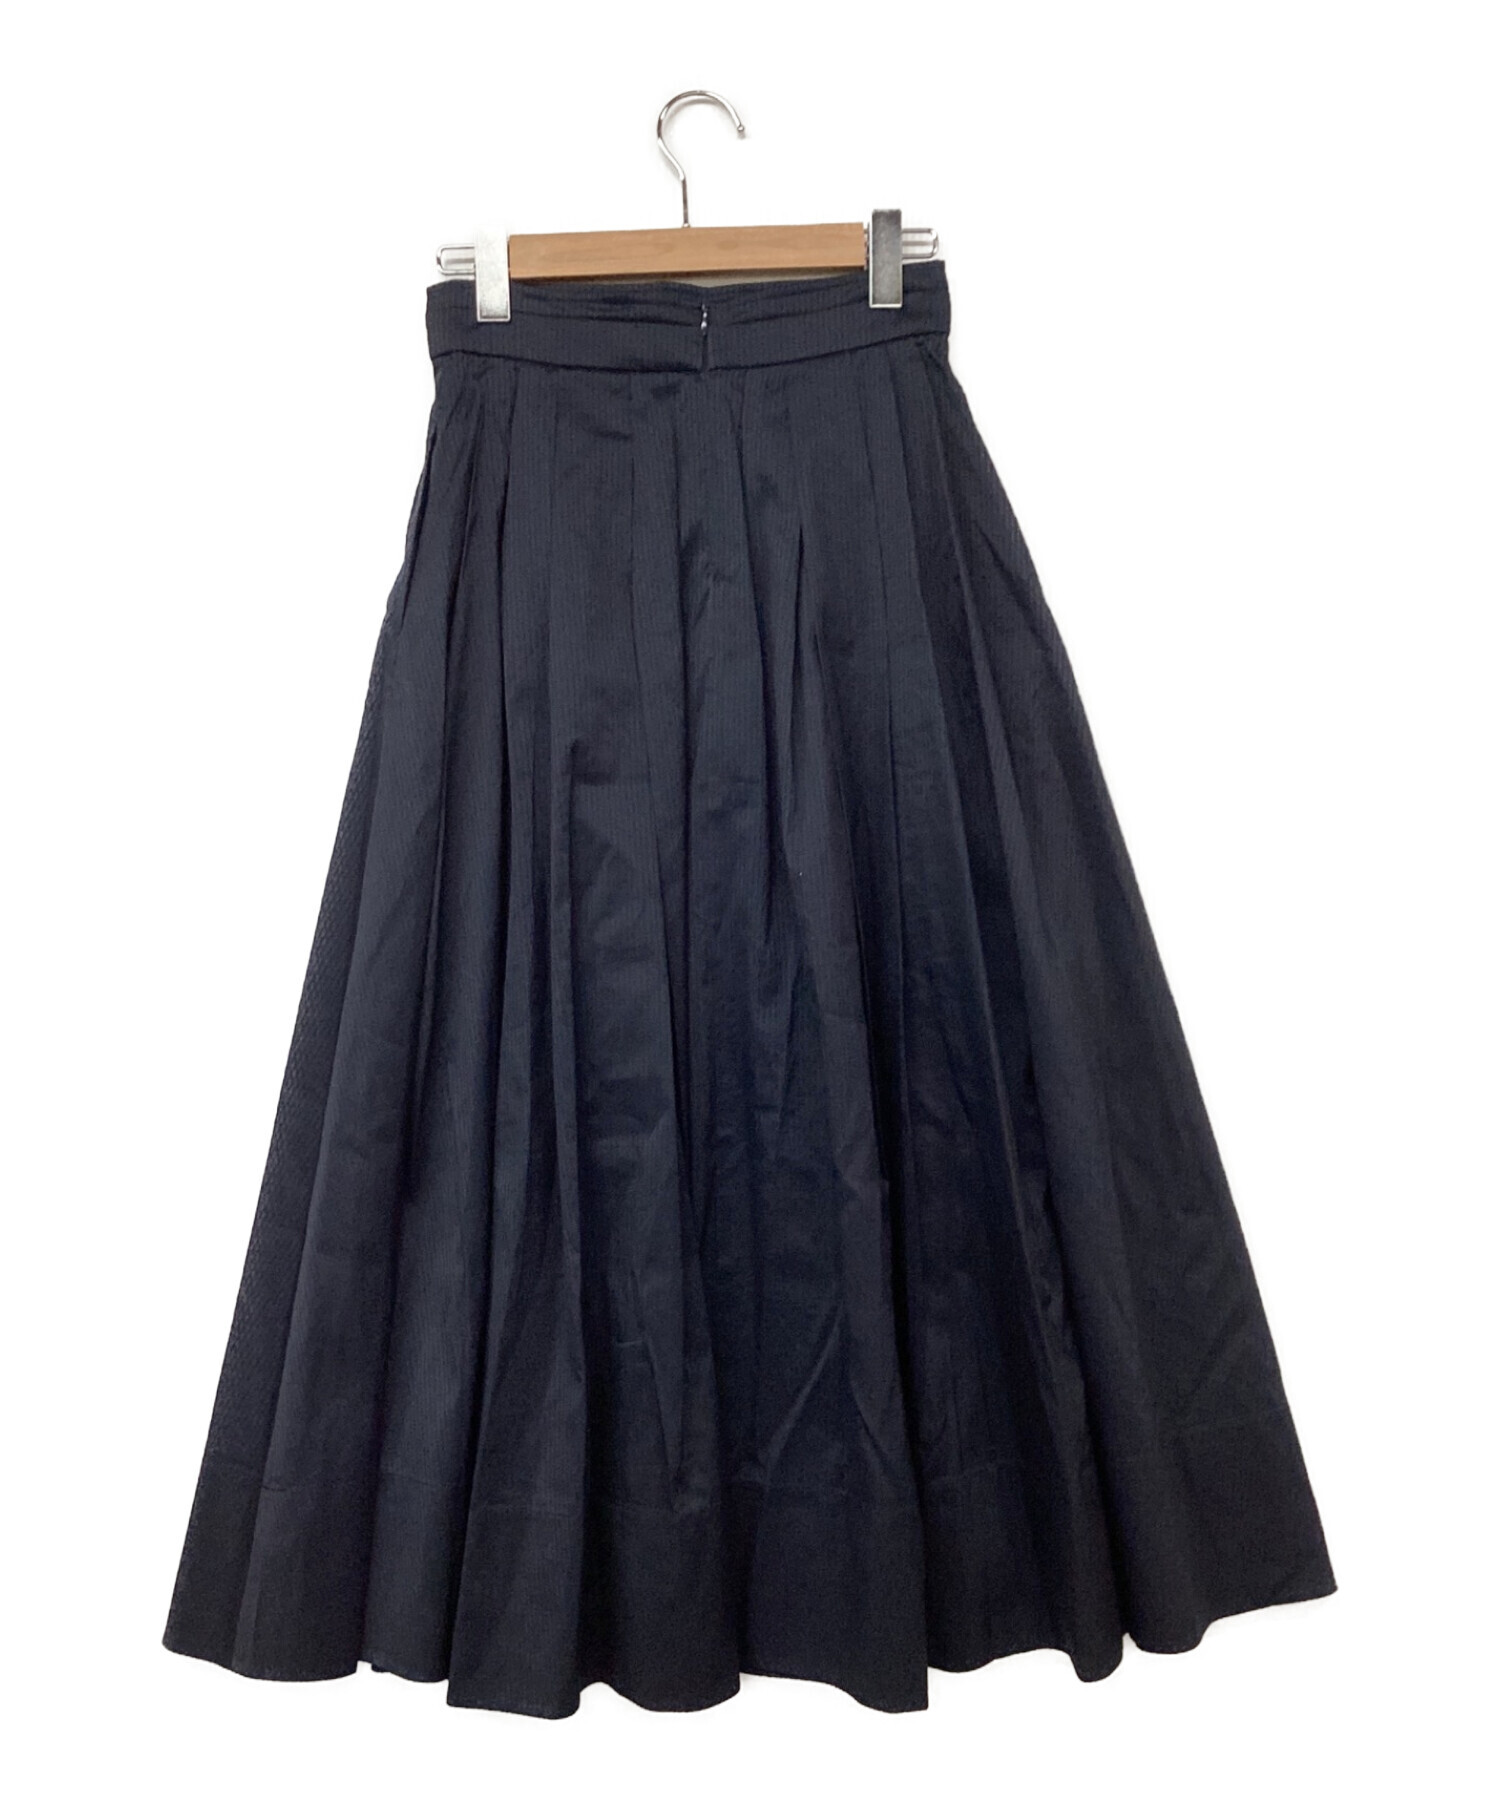 ebure (エブール) S/Cシアーストライプ マキシ丈タックギャザースカート ネイビー サイズ:36